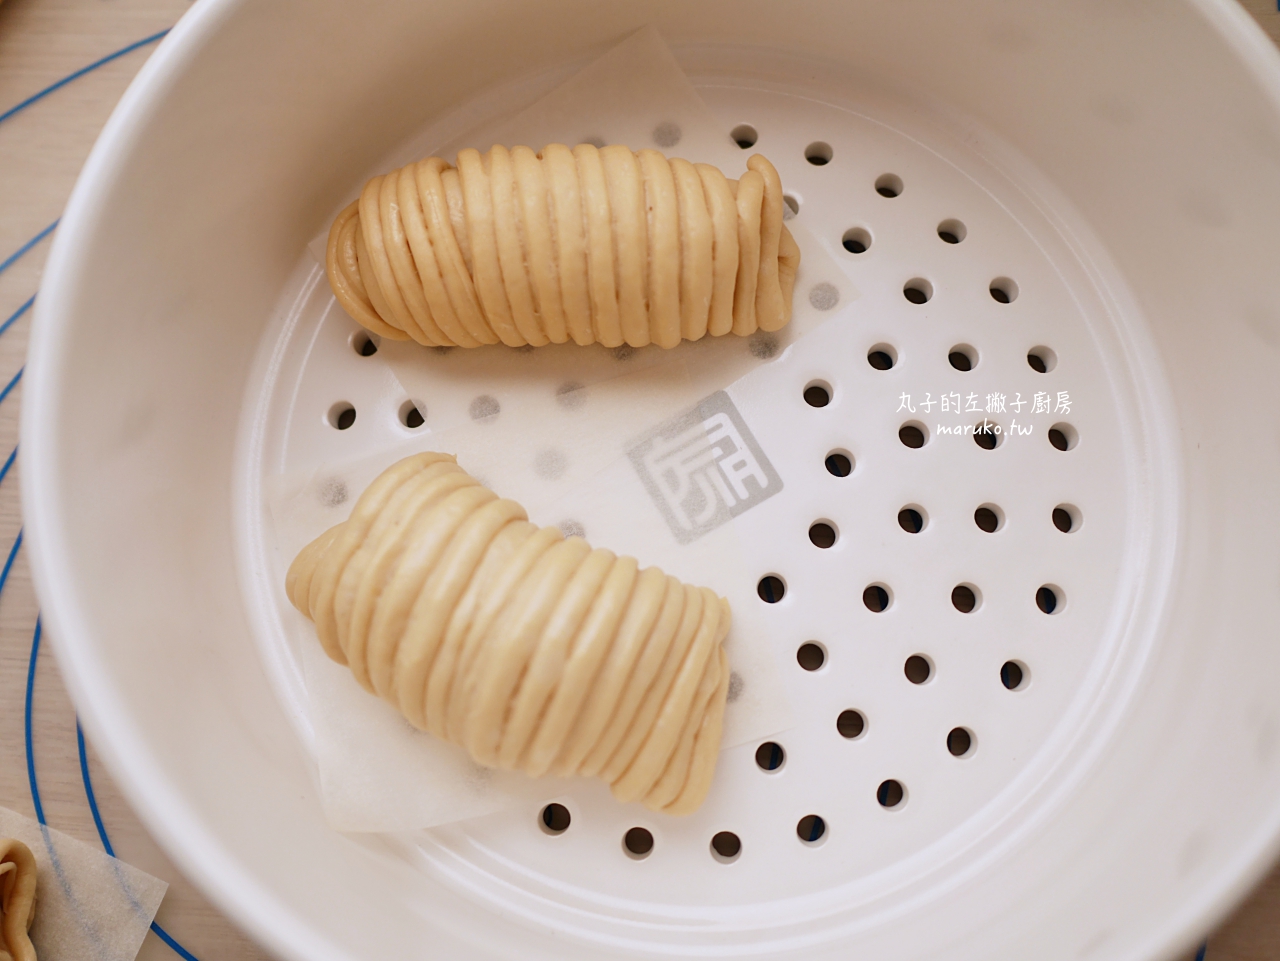 【食譜】爆漿黑糖饅頭 毛線球造型饅頭 一學就會黑糖饅頭做法 @Maruko與美食有個約會